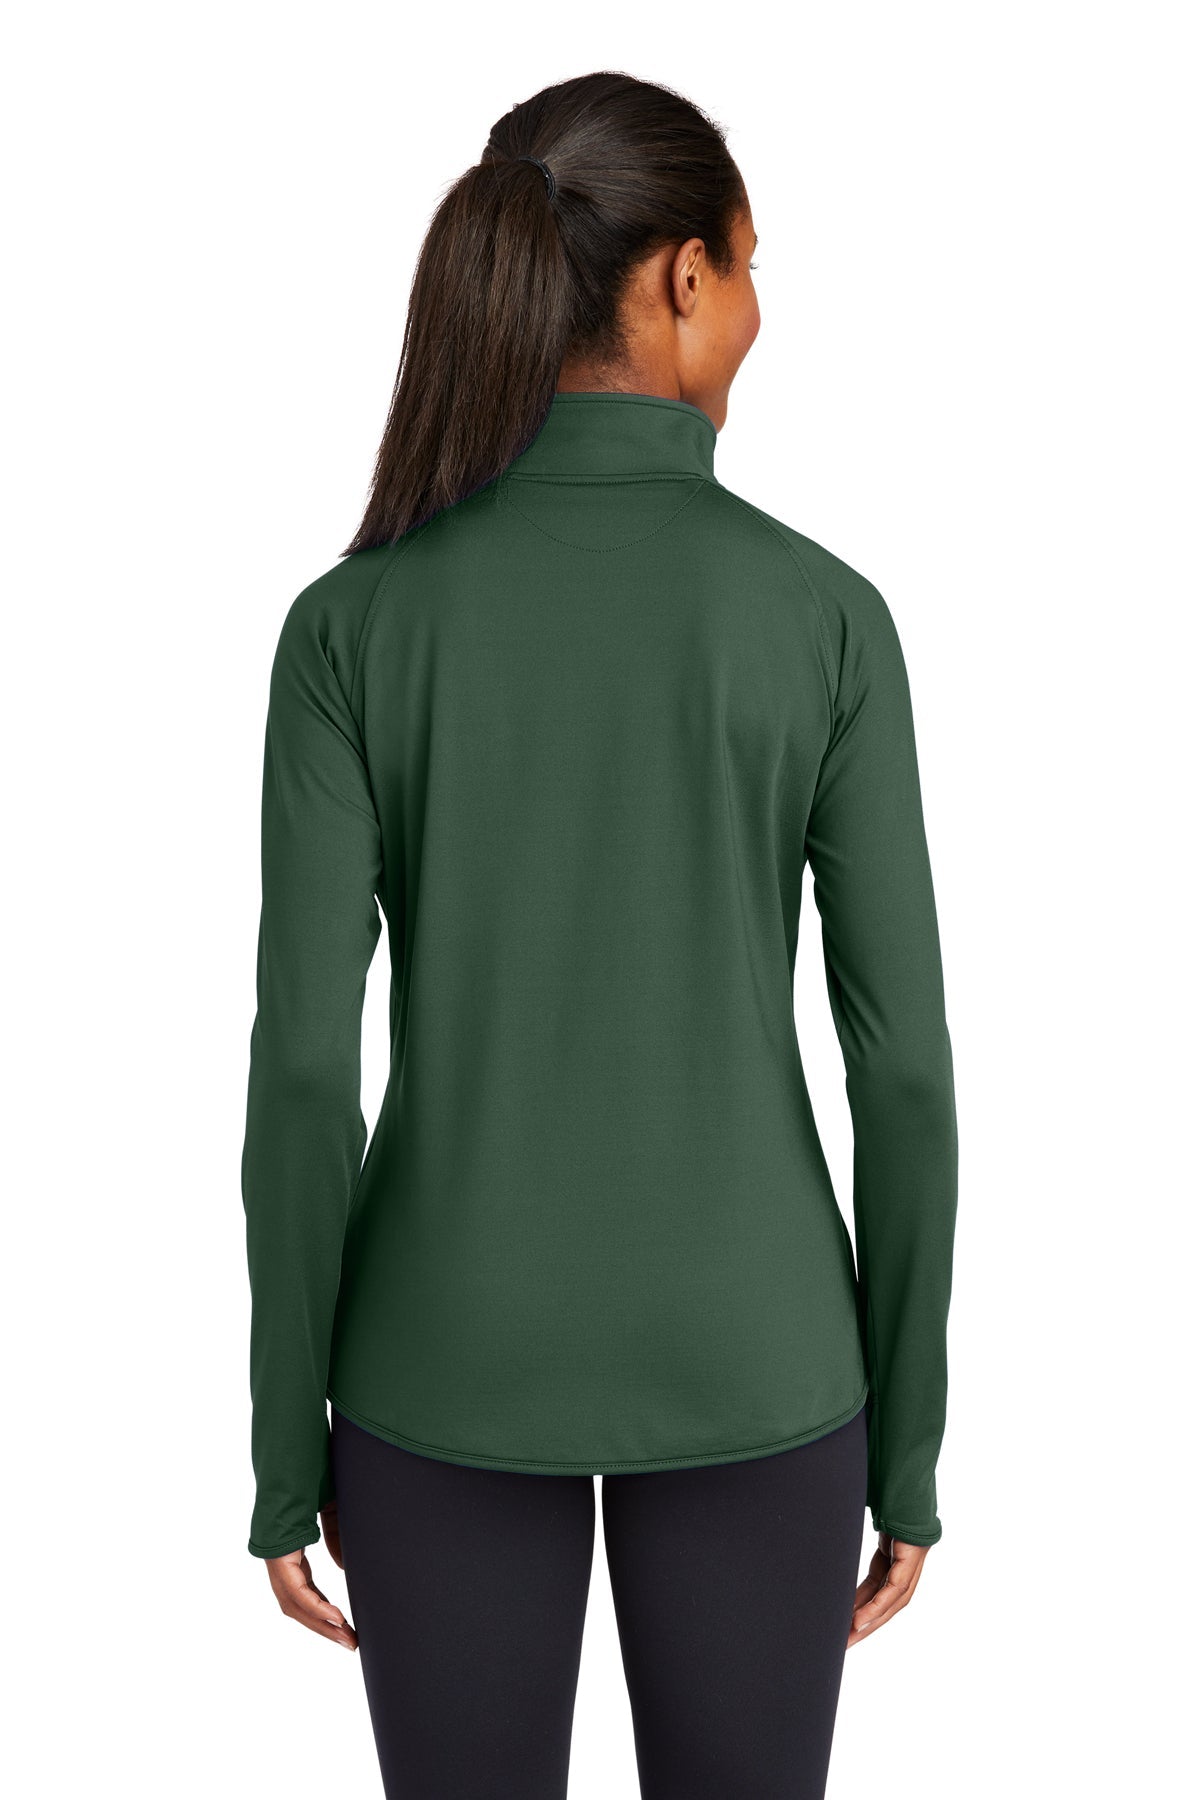 sport-tek_lst850 _forest green_company_logo_sweatshirts